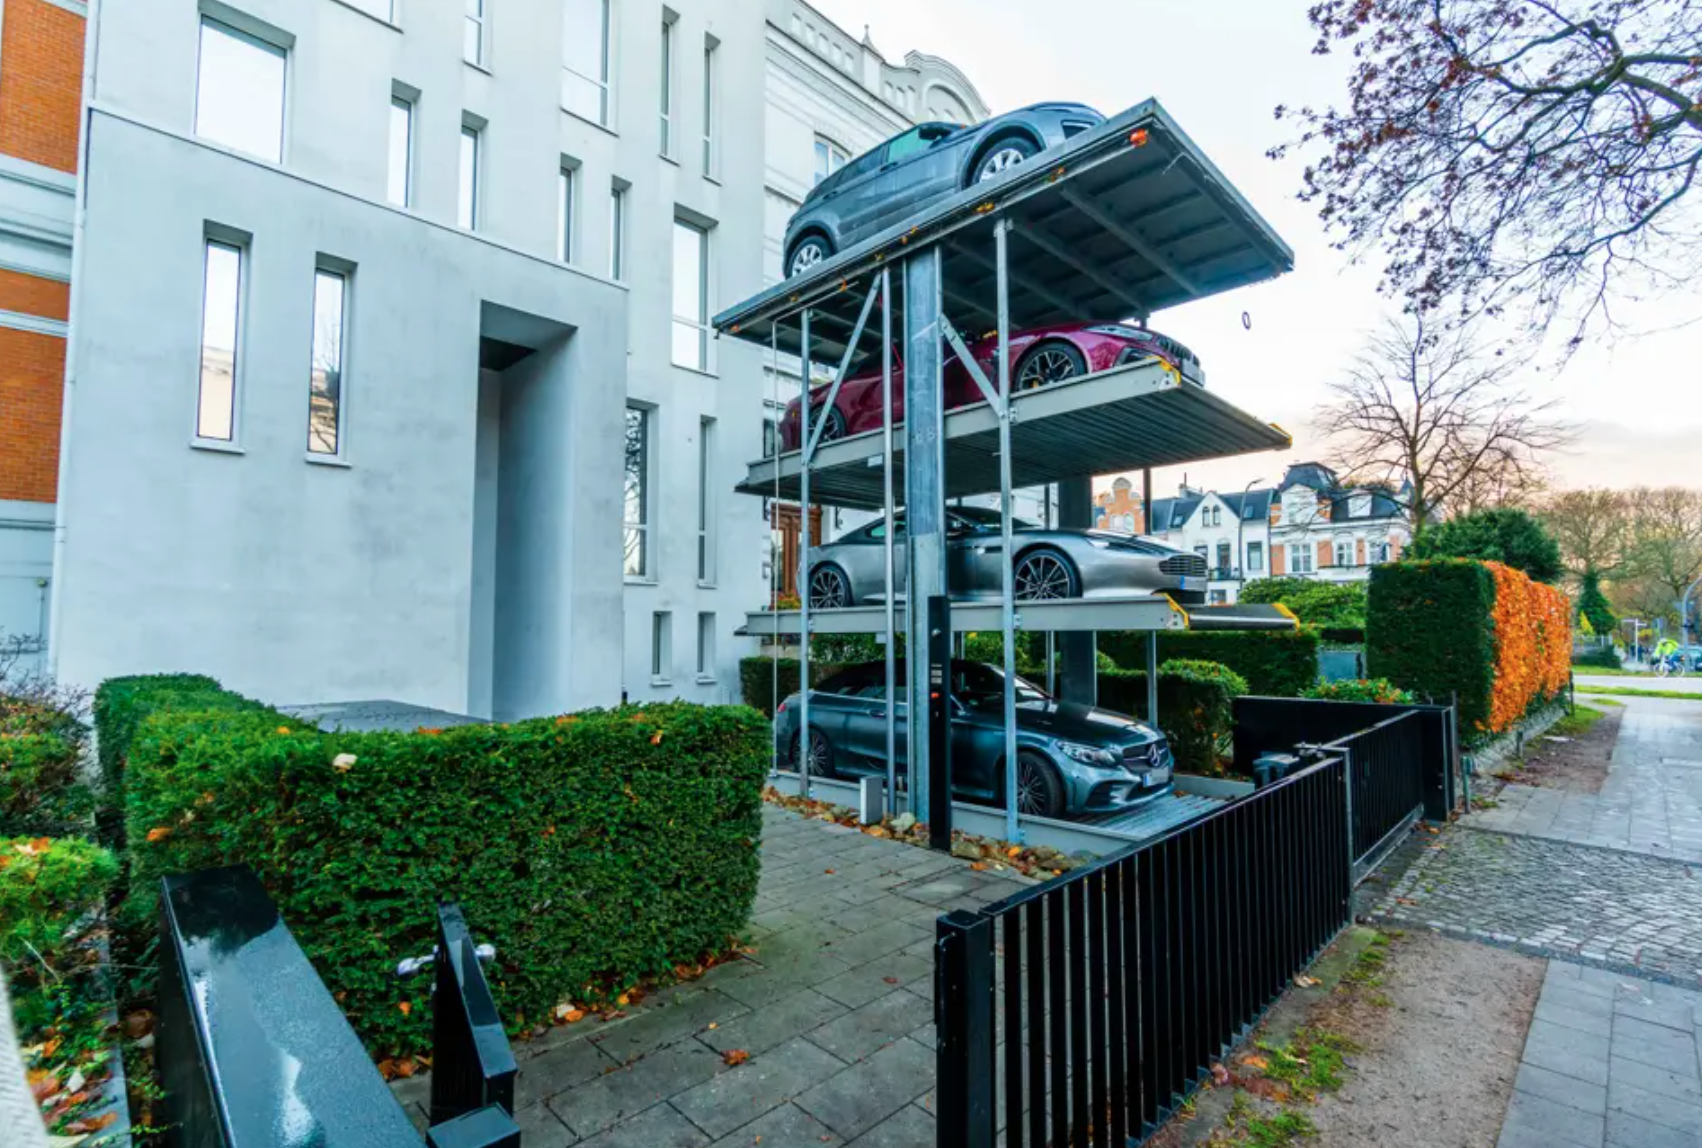 Hat Platz für vier Luxus-Karossen: Den Autolift gibt es laut Makler nur einmal in Hamburg.